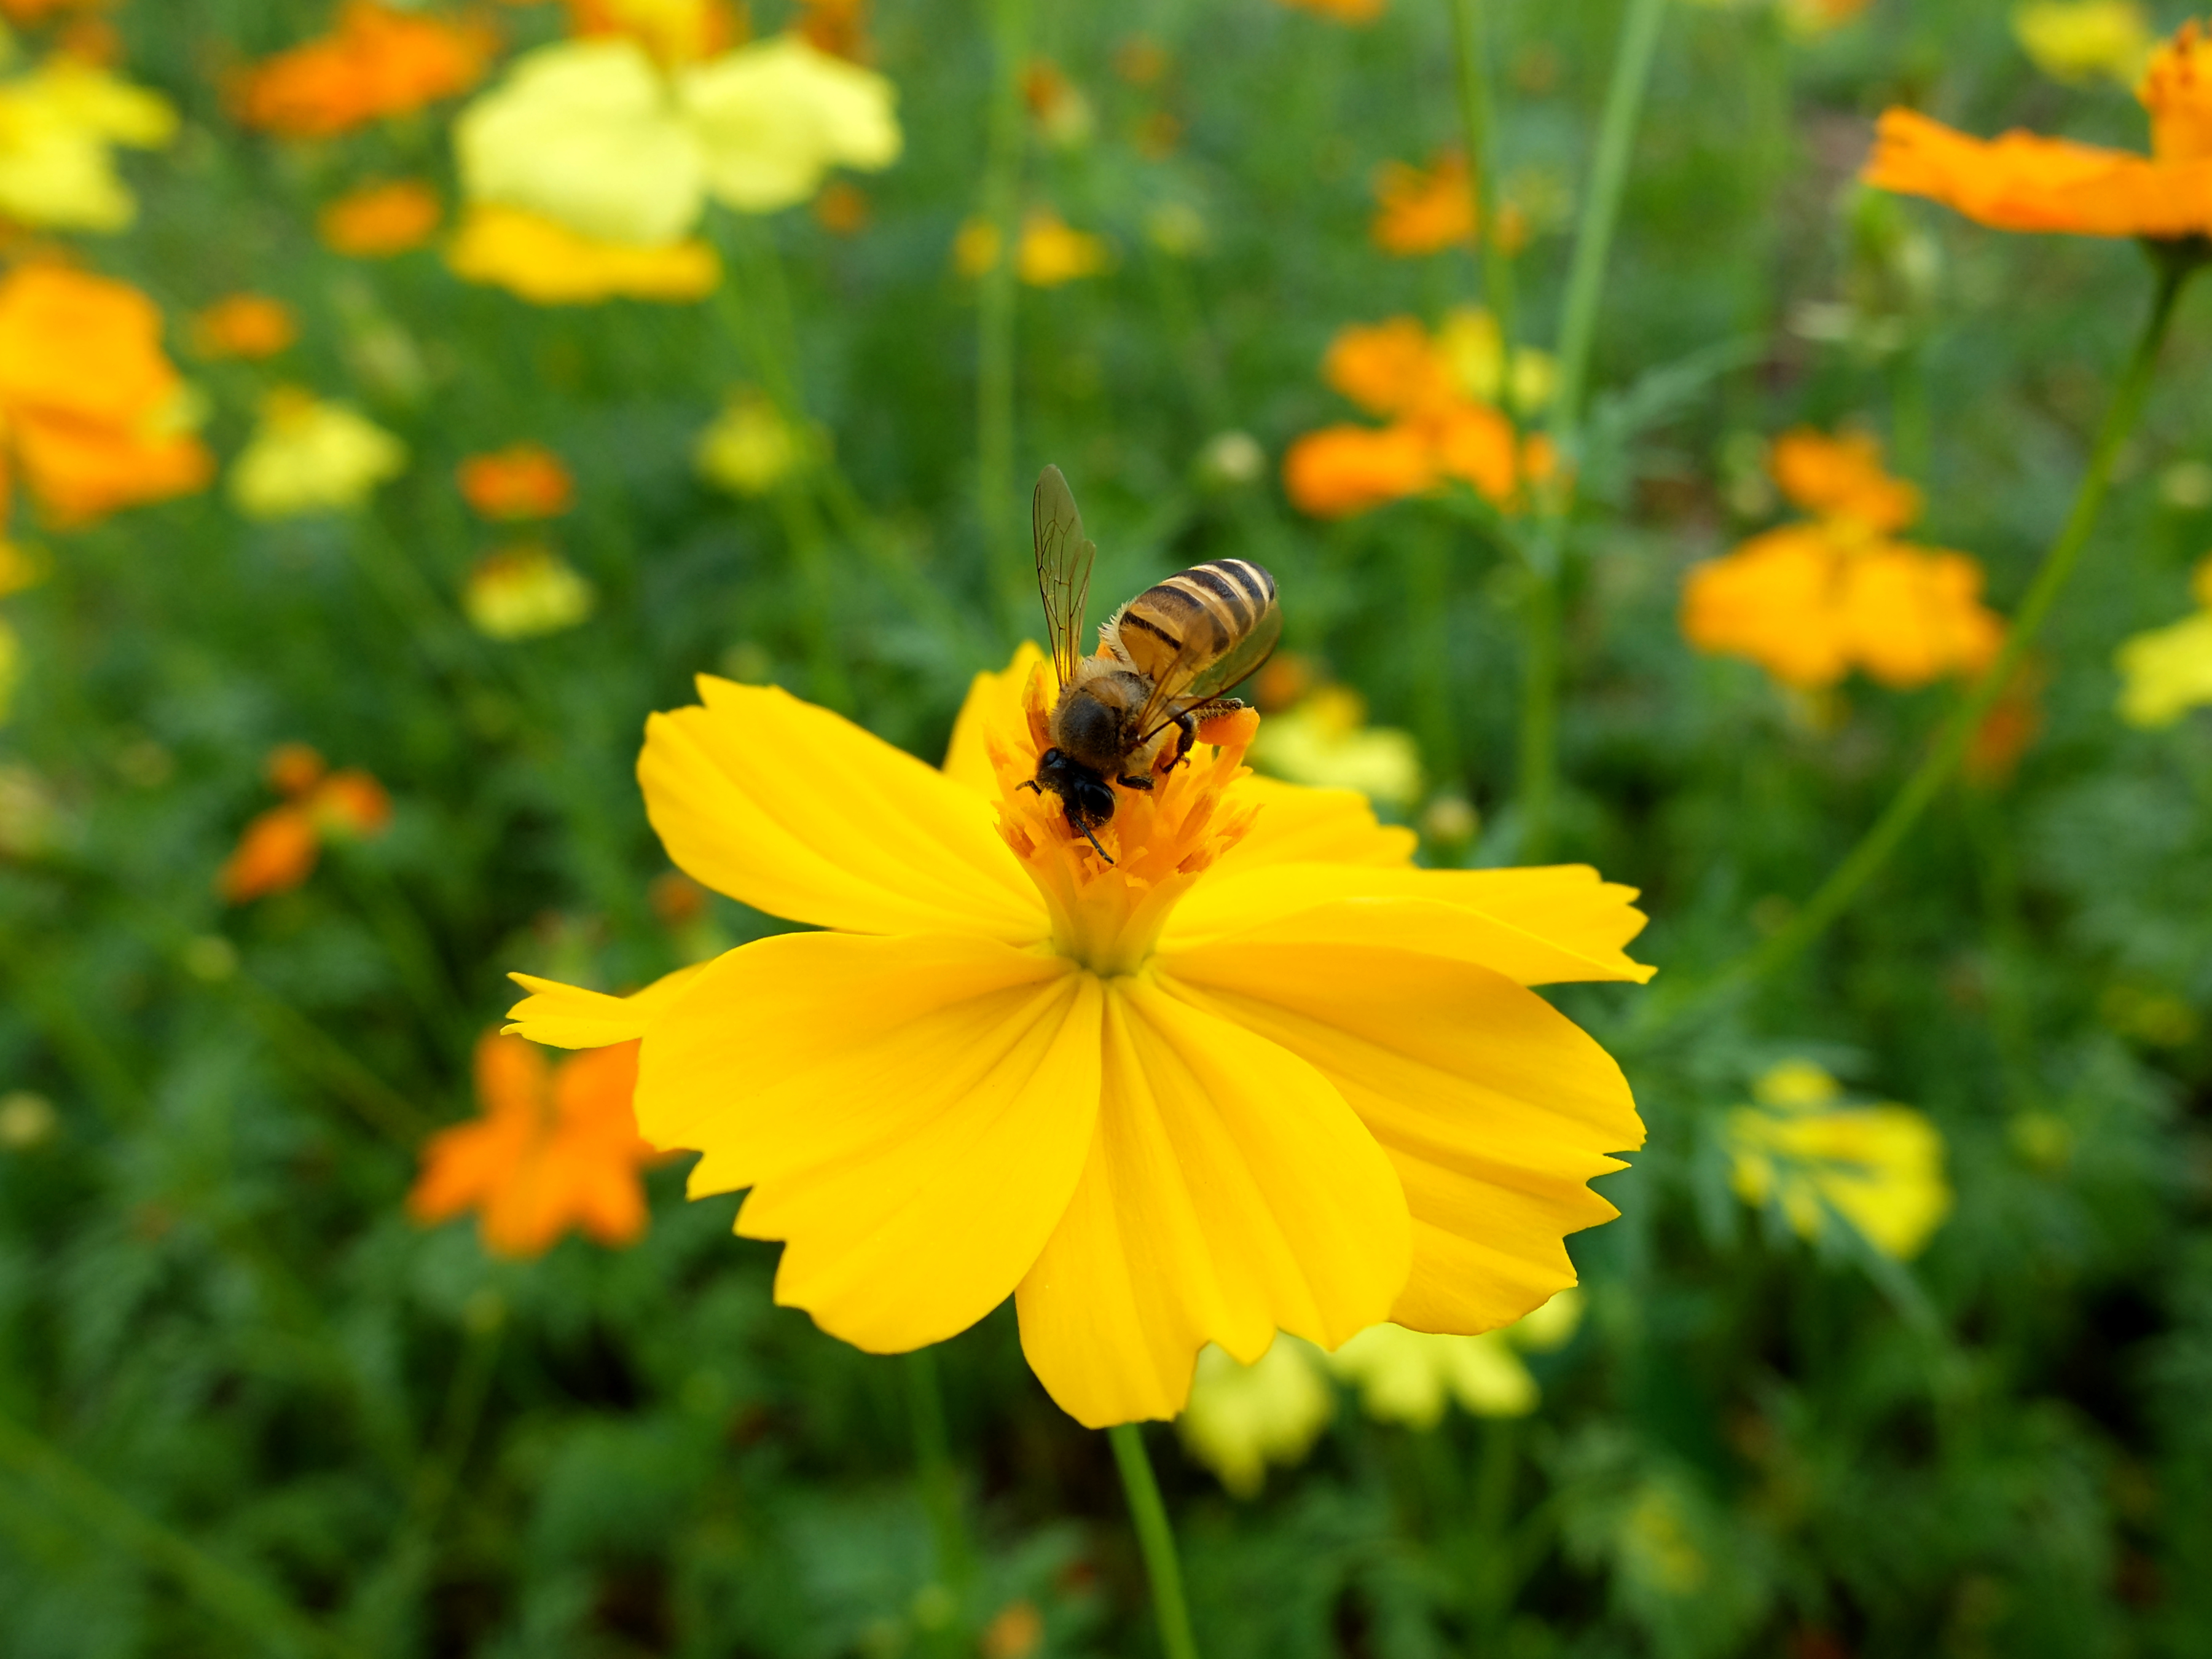 Honeybees like open flowers. (Thinkstock/PA)